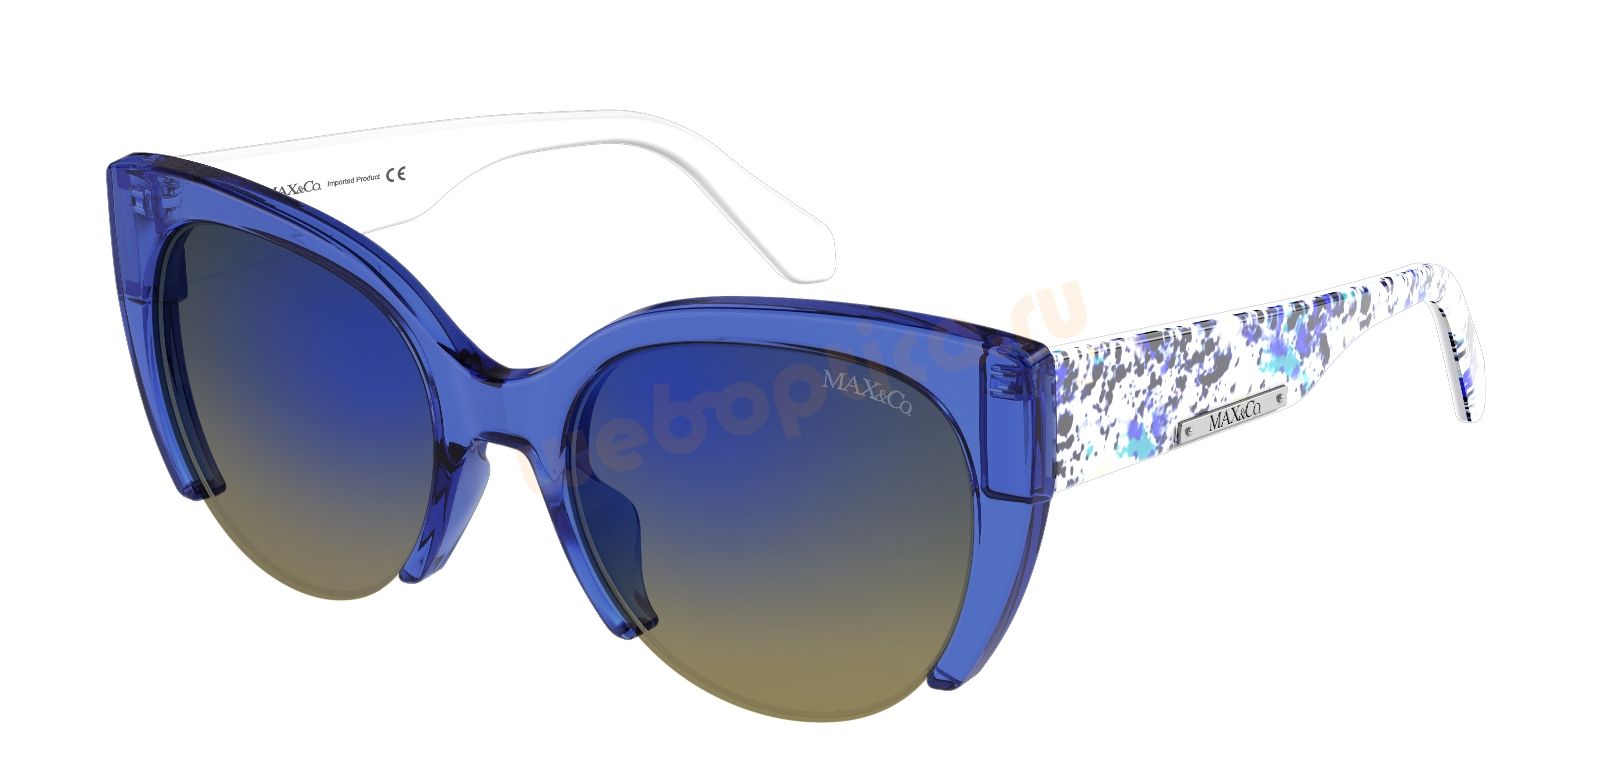 Солнцезащитные очки MAX&Co. 247S-46C купить в москве, цена, интернет магазин